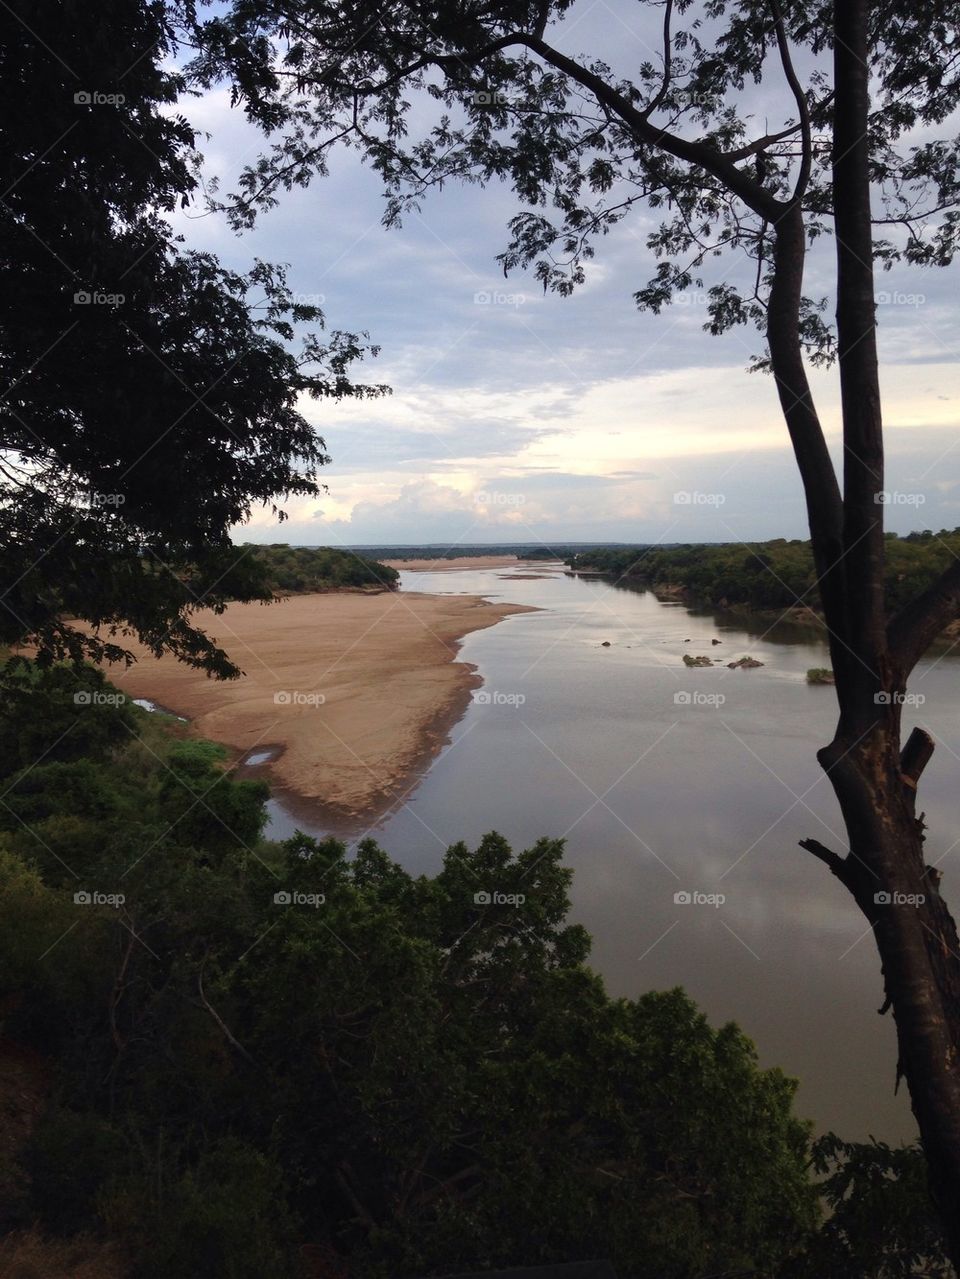 Save River, Zimbabwe